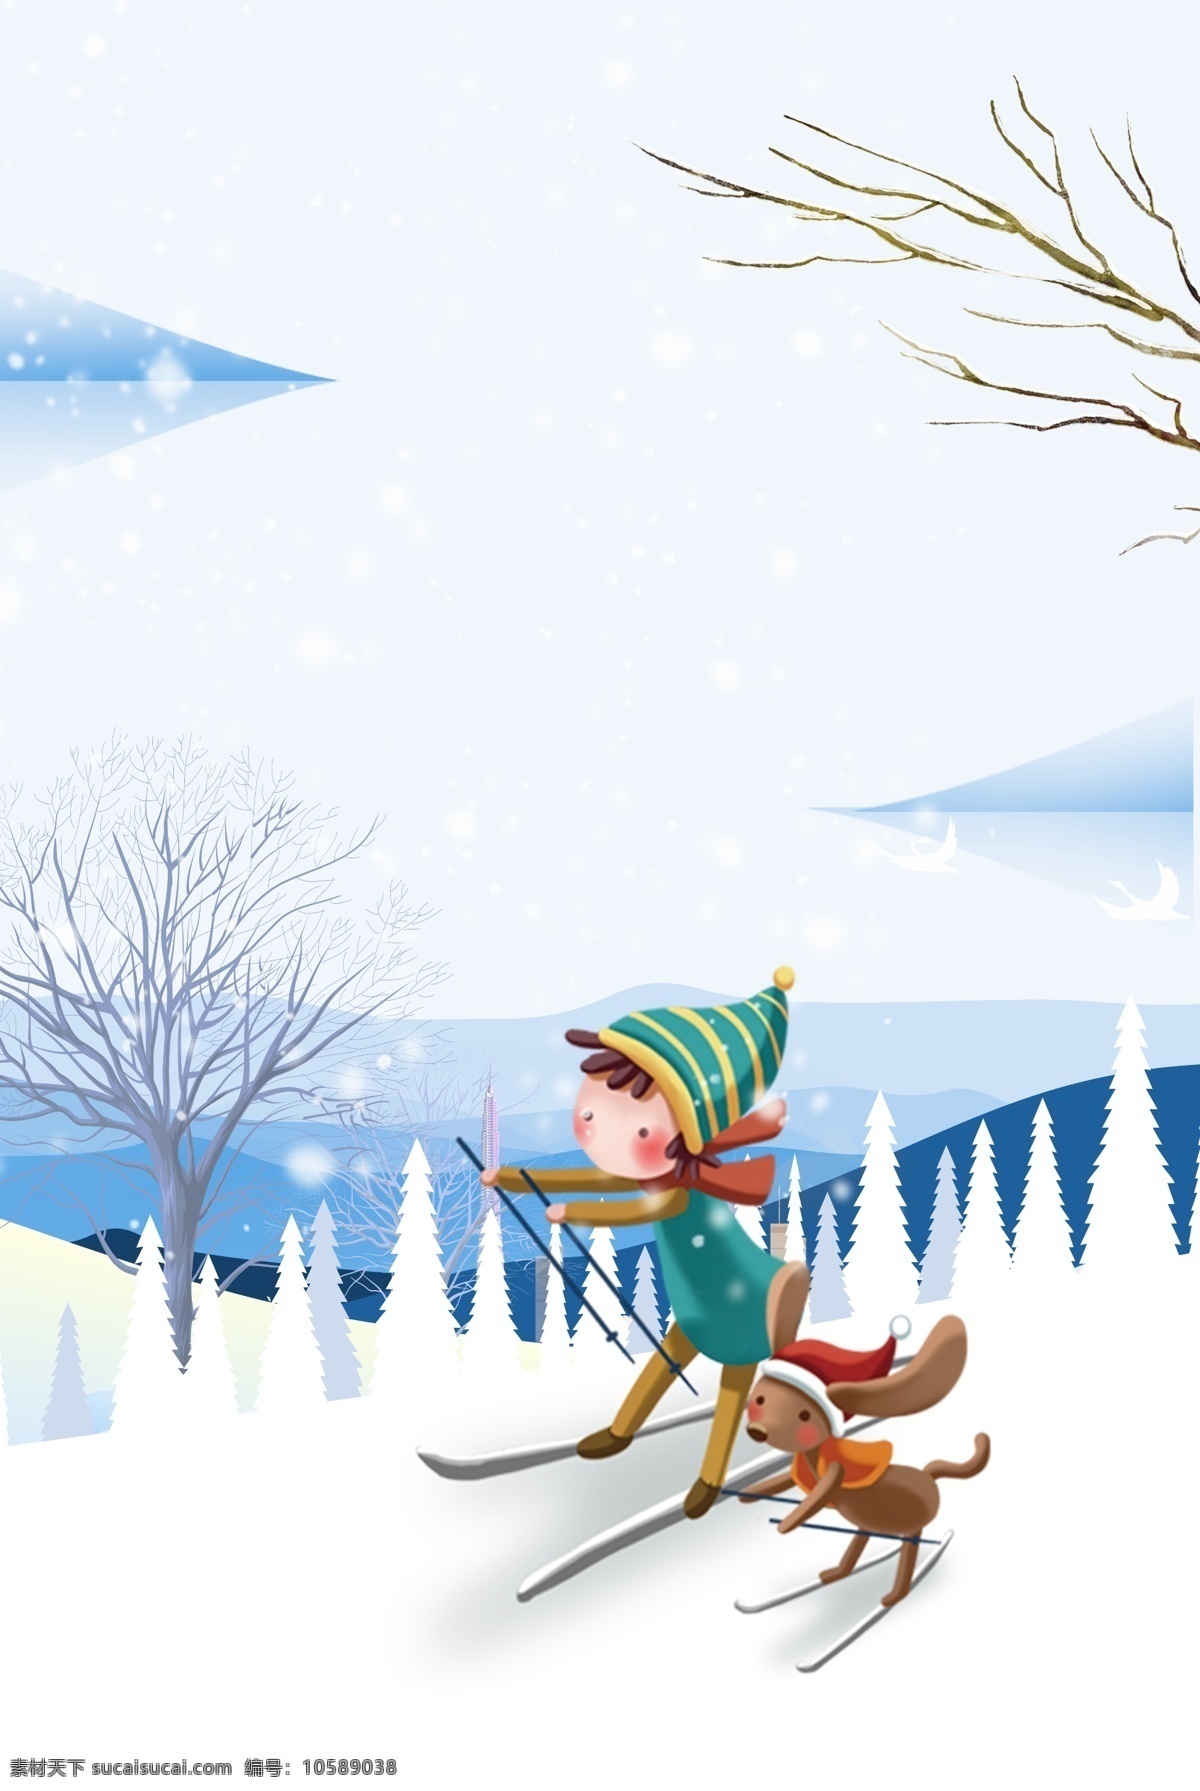 冬季 滑雪 儿童 狗 背景 圣诞背景 冬天 活动背景 旅游 背景设计 滑雪背景 冬季素材 滑雪主题背景 激情滑雪 滑雪比赛 滑雪活动背景 冬季活动背景